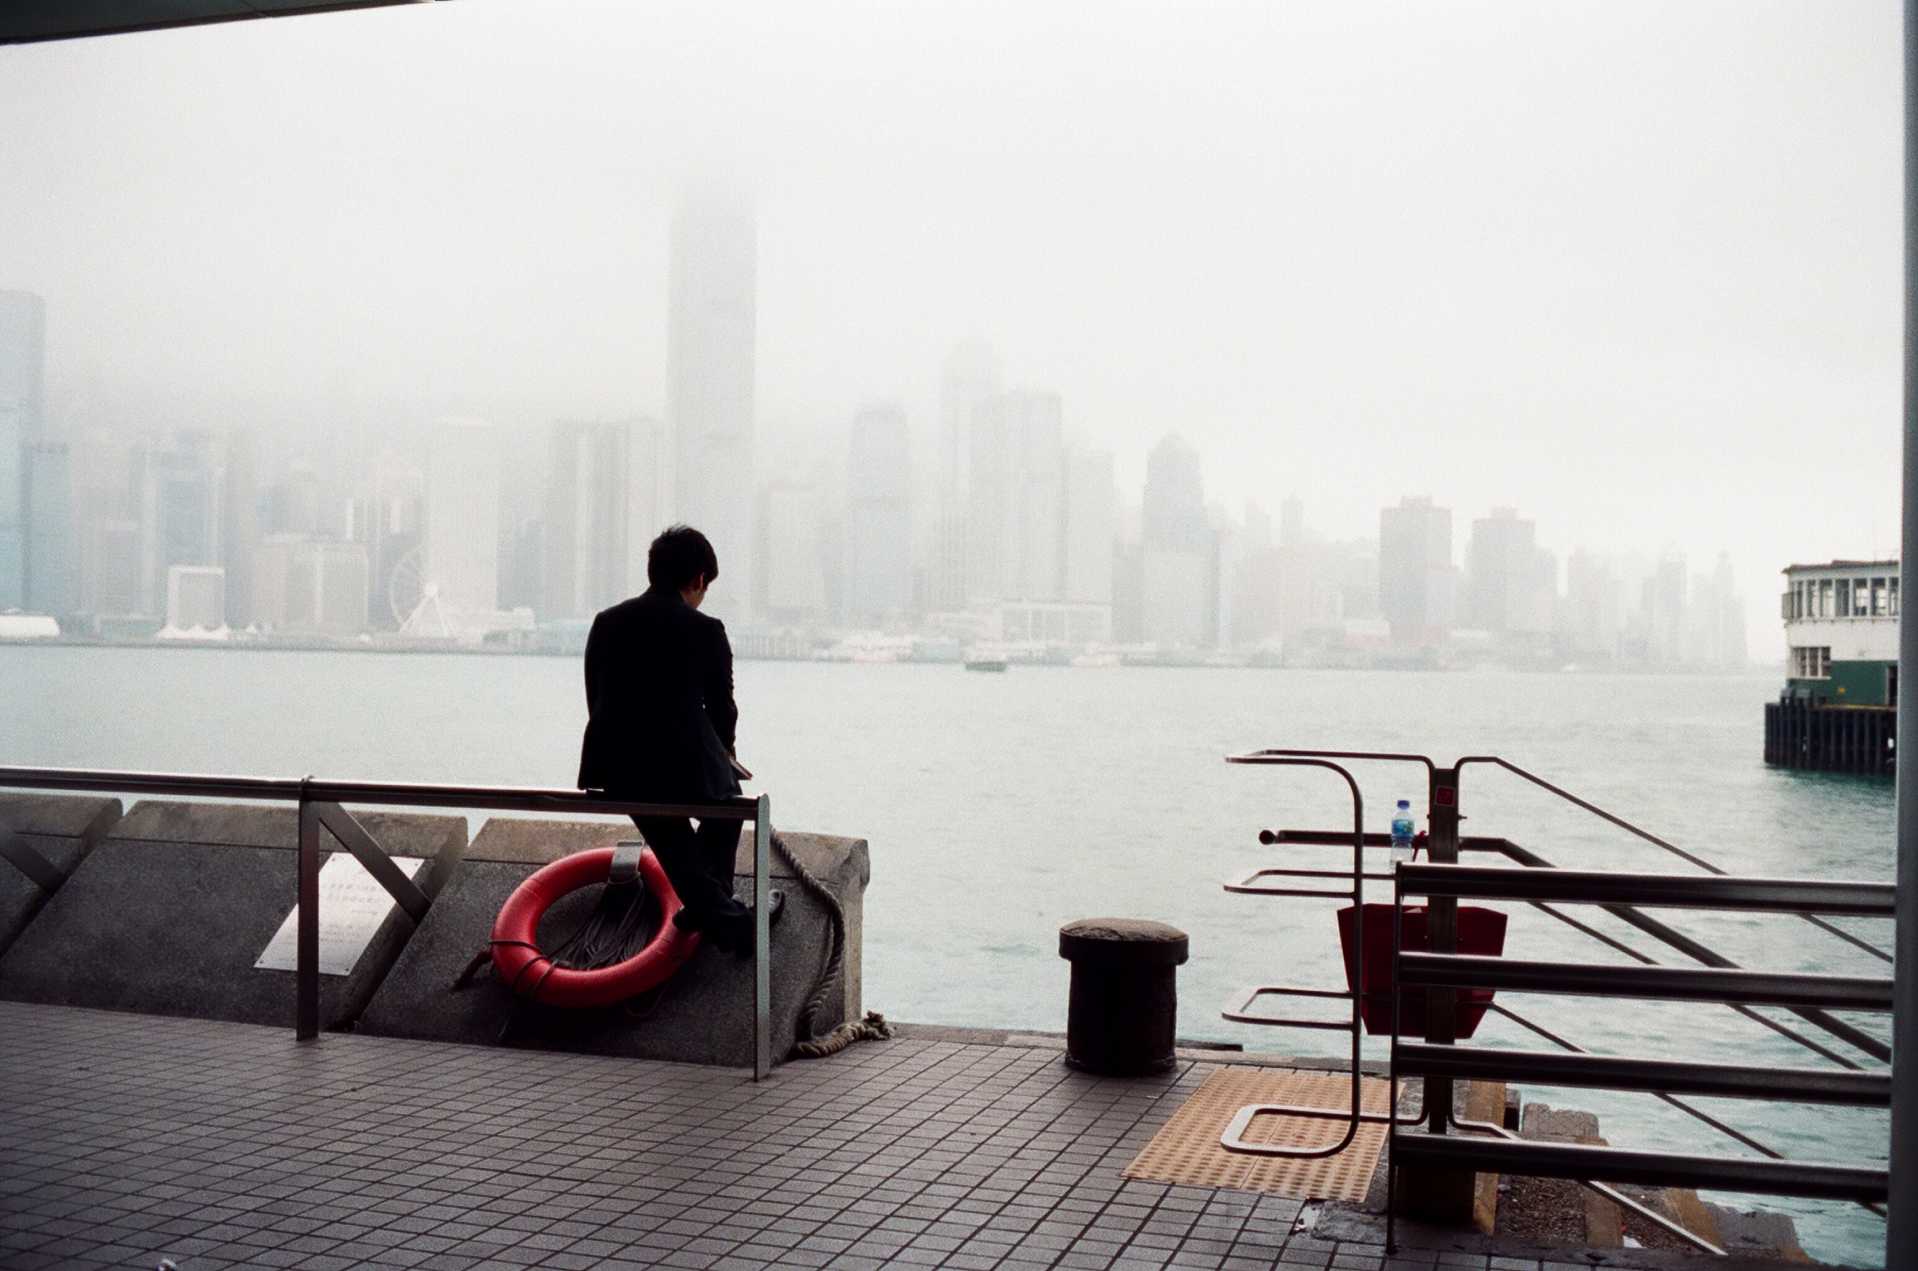  "Contemplation" Hong Kong Harbor, 2015 